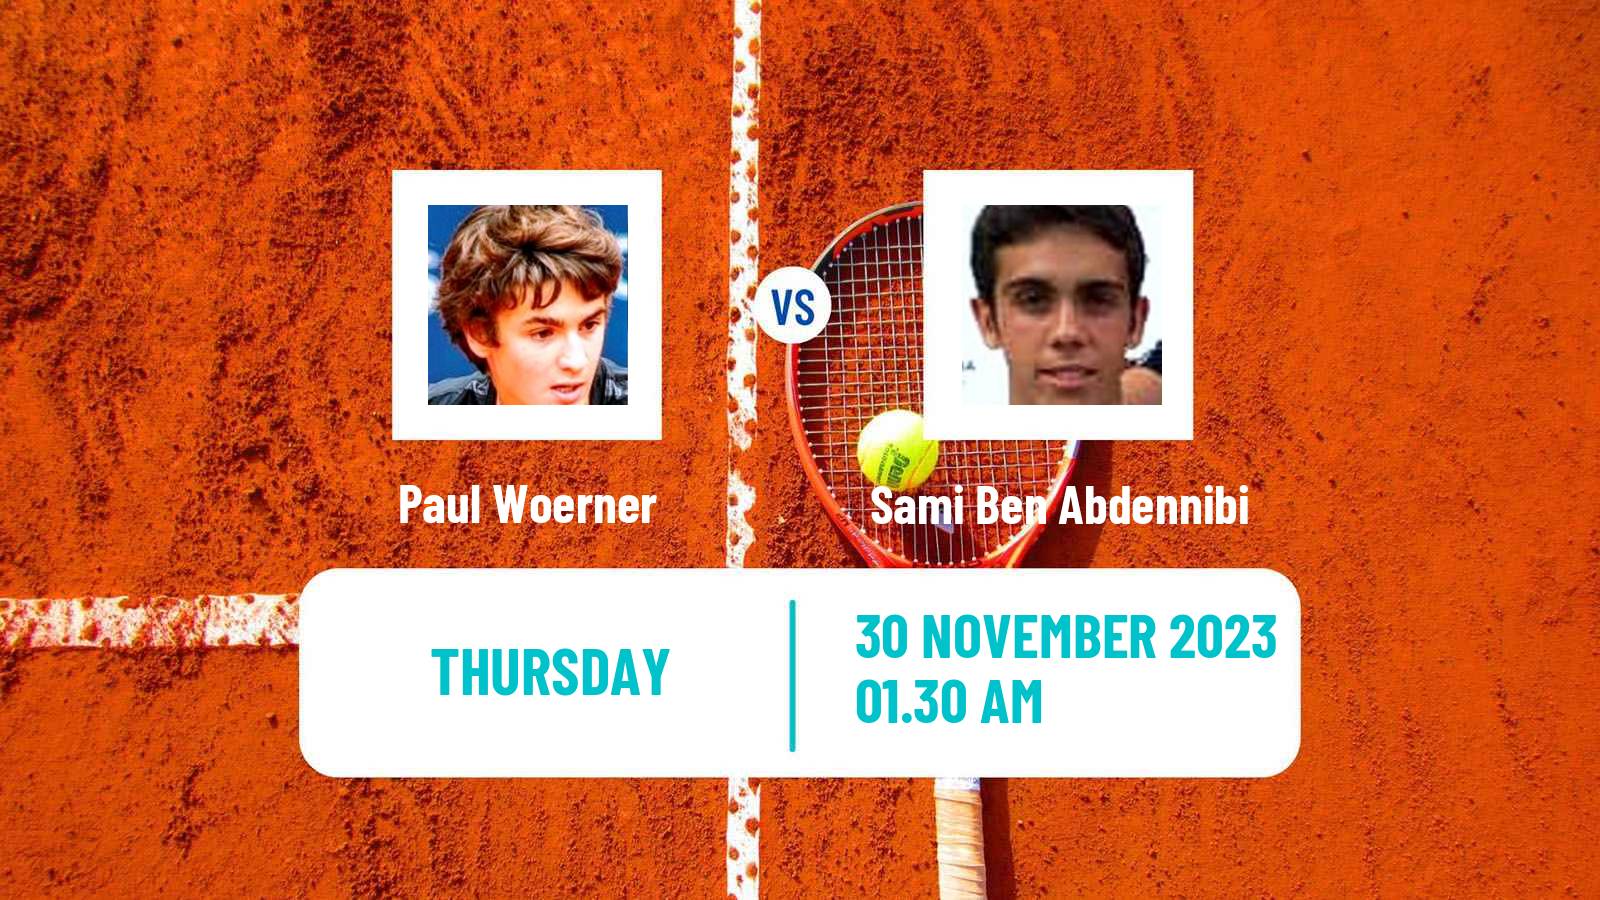 Tennis ITF M15 Antalya 18 Men Paul Woerner - Sami Ben Abdennibi